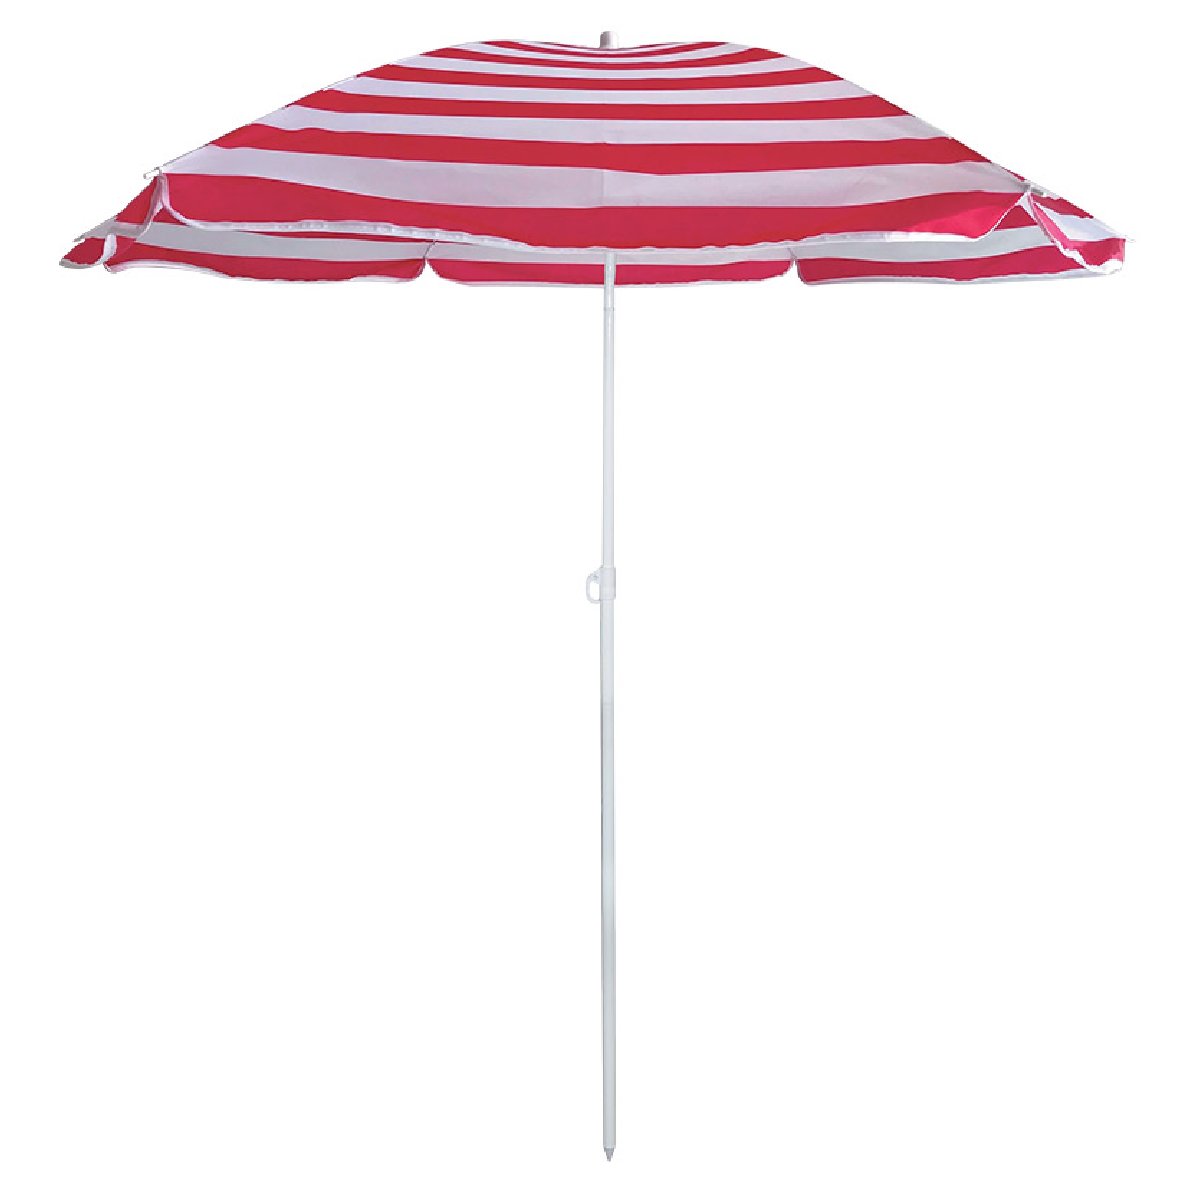 Зонт пляжный BU-68 диаметр 175 см, складная штанга 205 смКупить